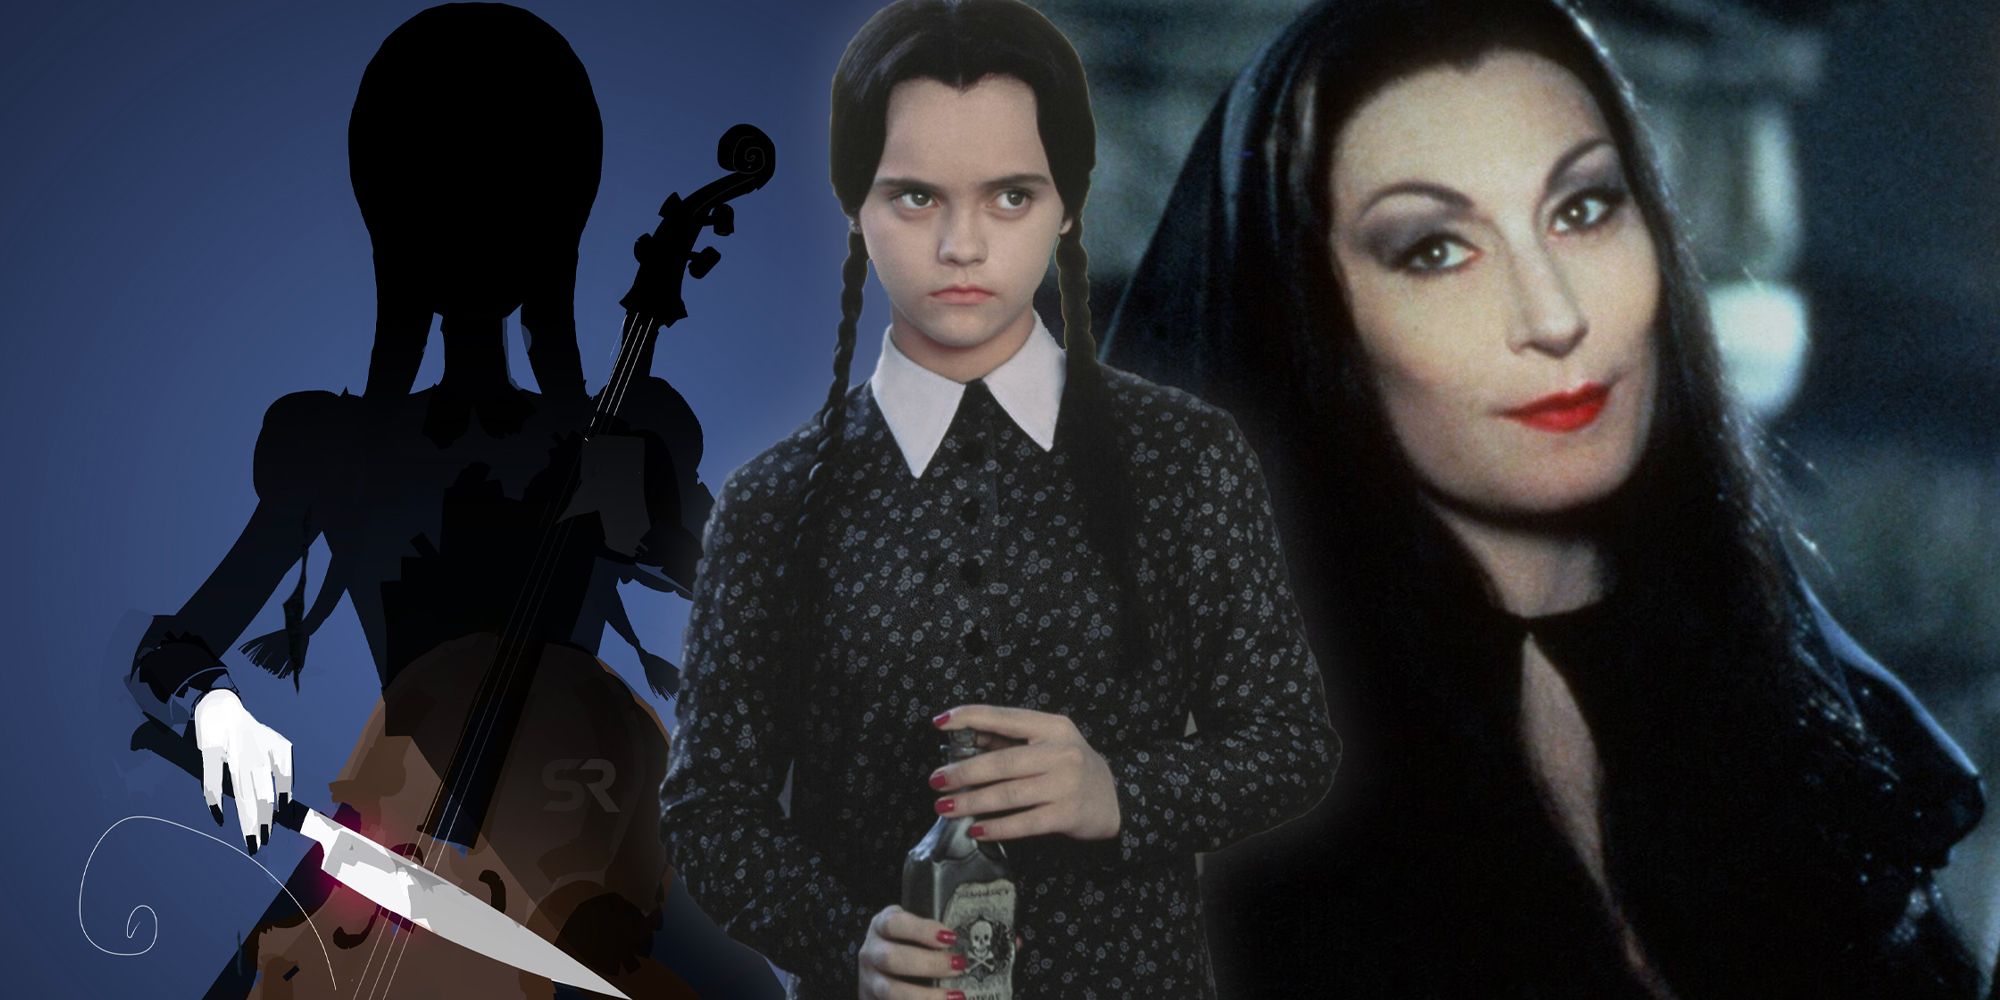 El programa de televisión de la familia Addams presuntamente buscaba a Christina Ricci para interpretar a Morticia